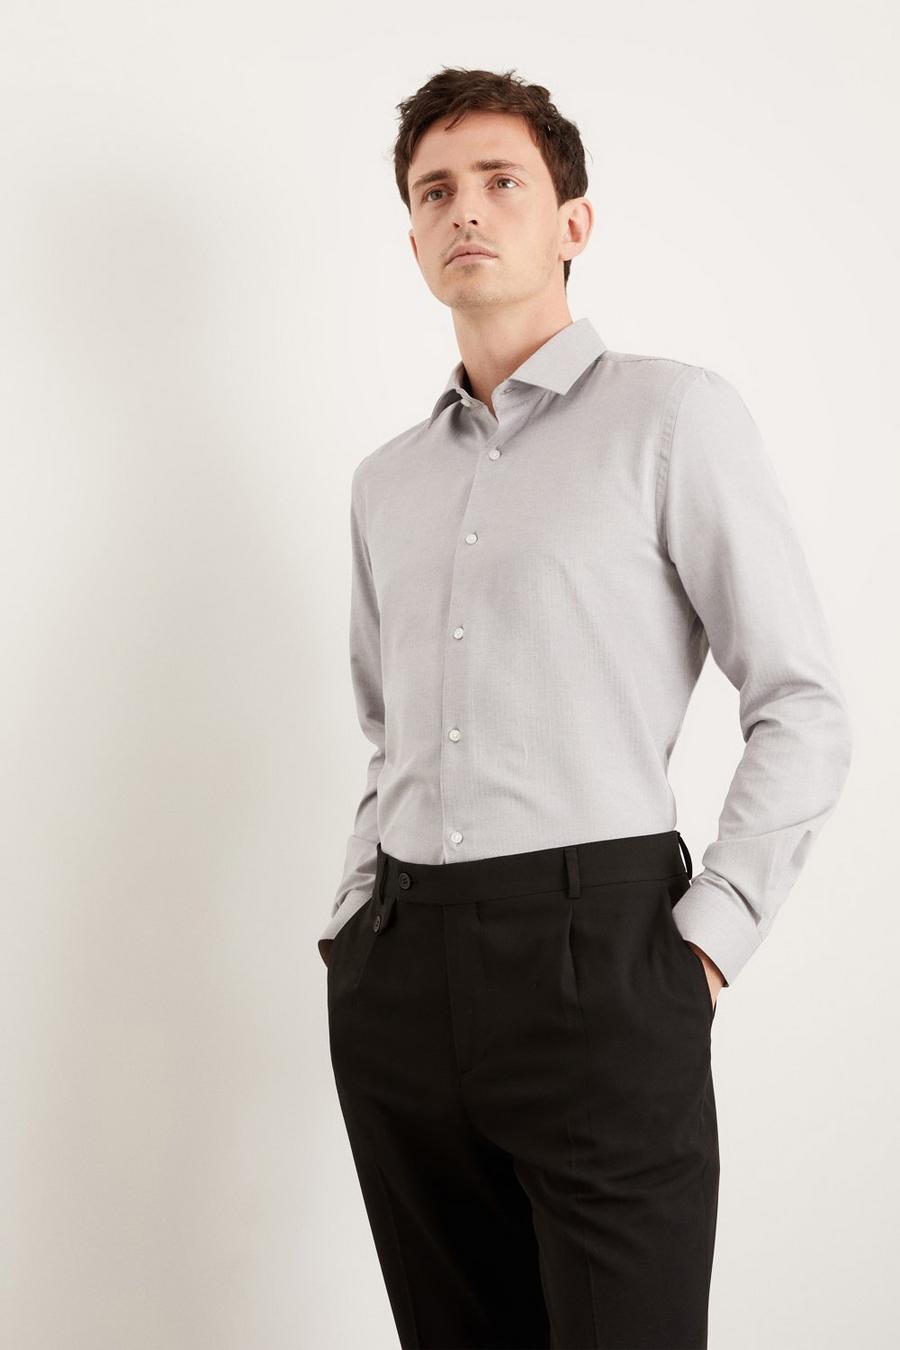 Grey Tailored Fit Herringbone Texture Smart Shirt